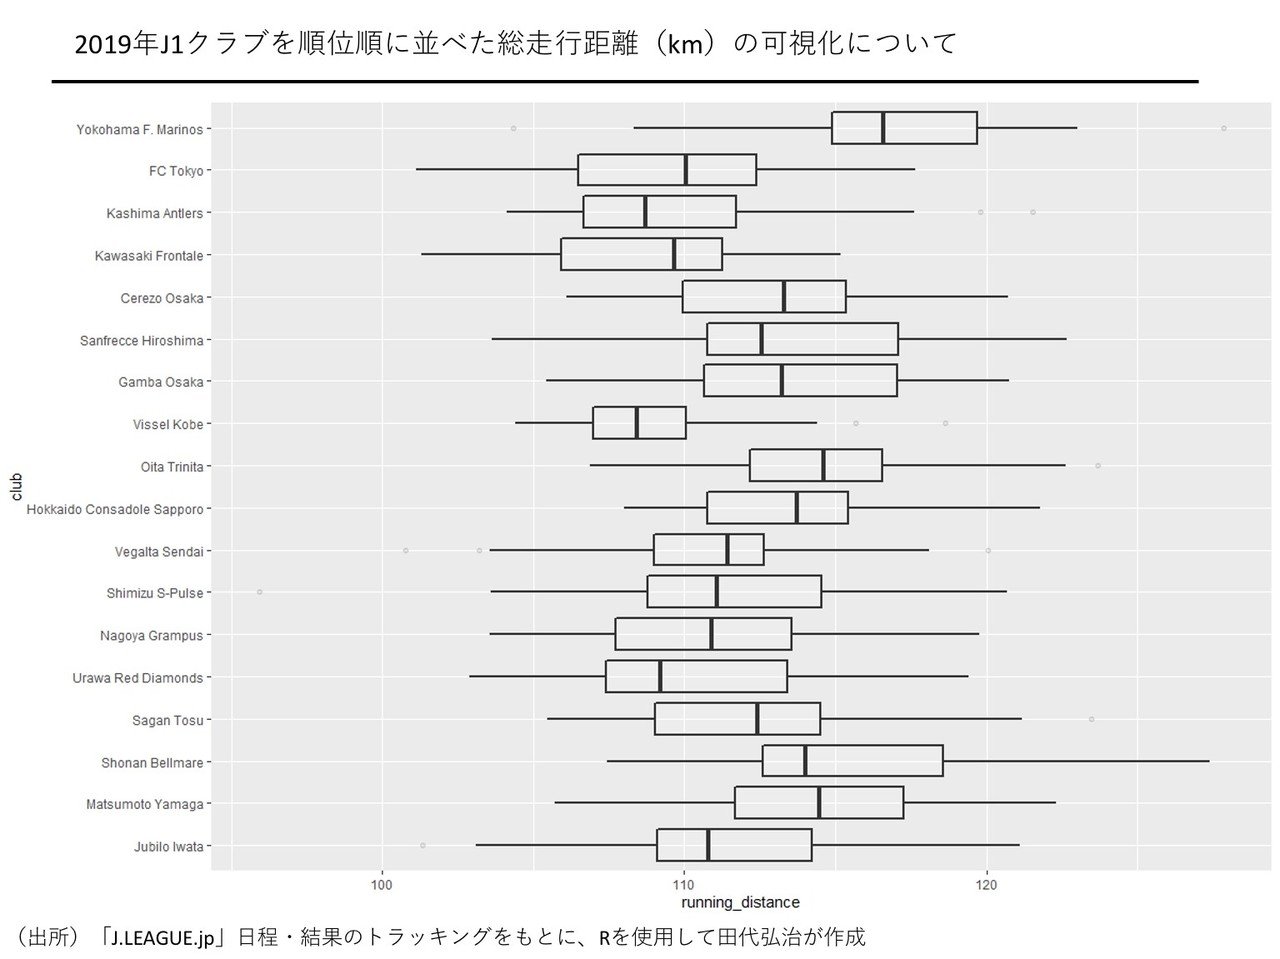 Jリーグのトラッキングデータをもとに簡単な分析をしてみた 田代弘治 Kouji Tashiro Note